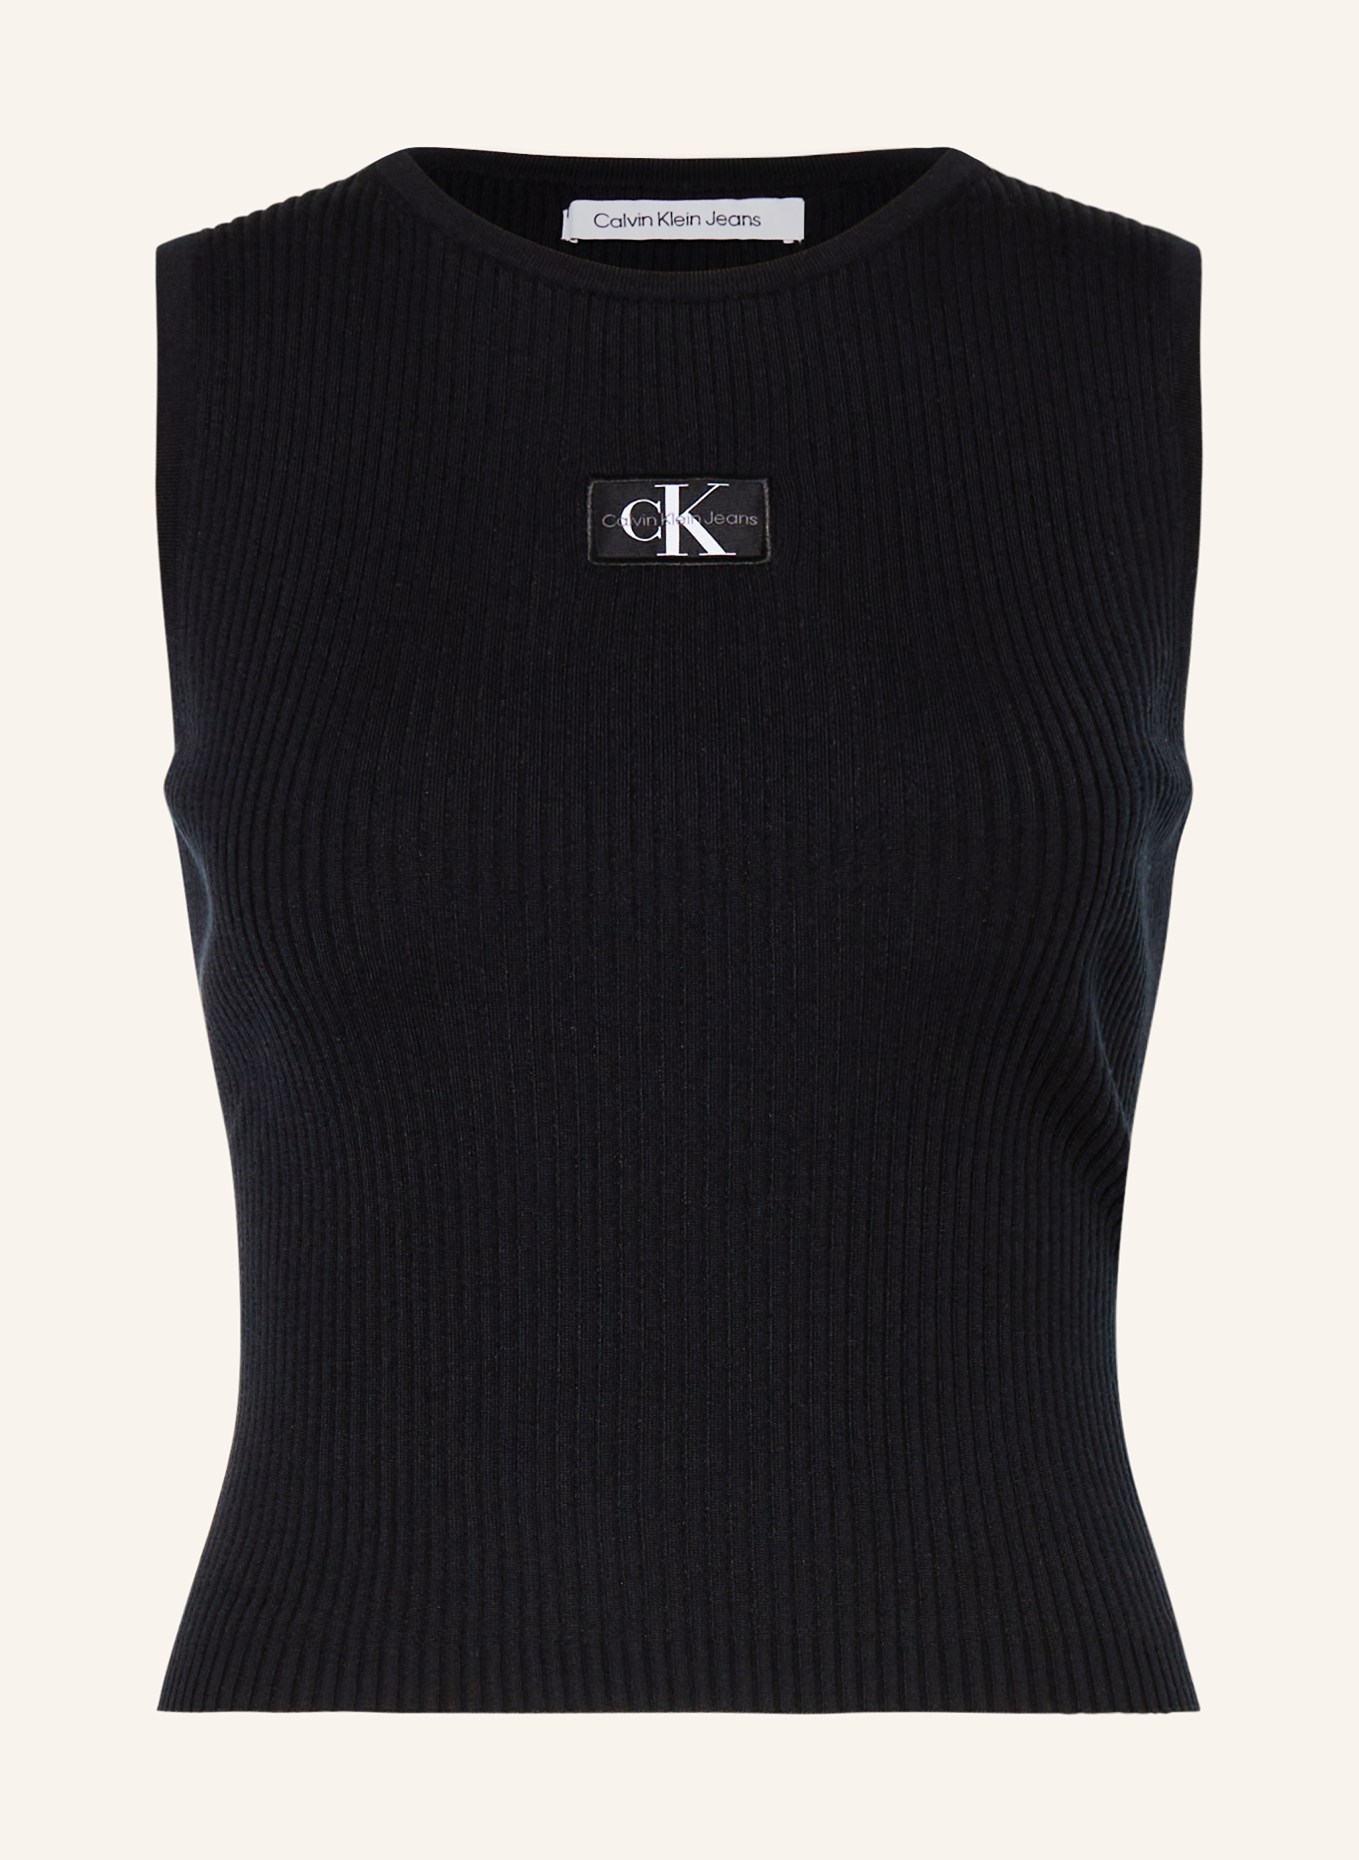 Calvin Klein Jeans Knit top, Color: BLACK (Image 1)